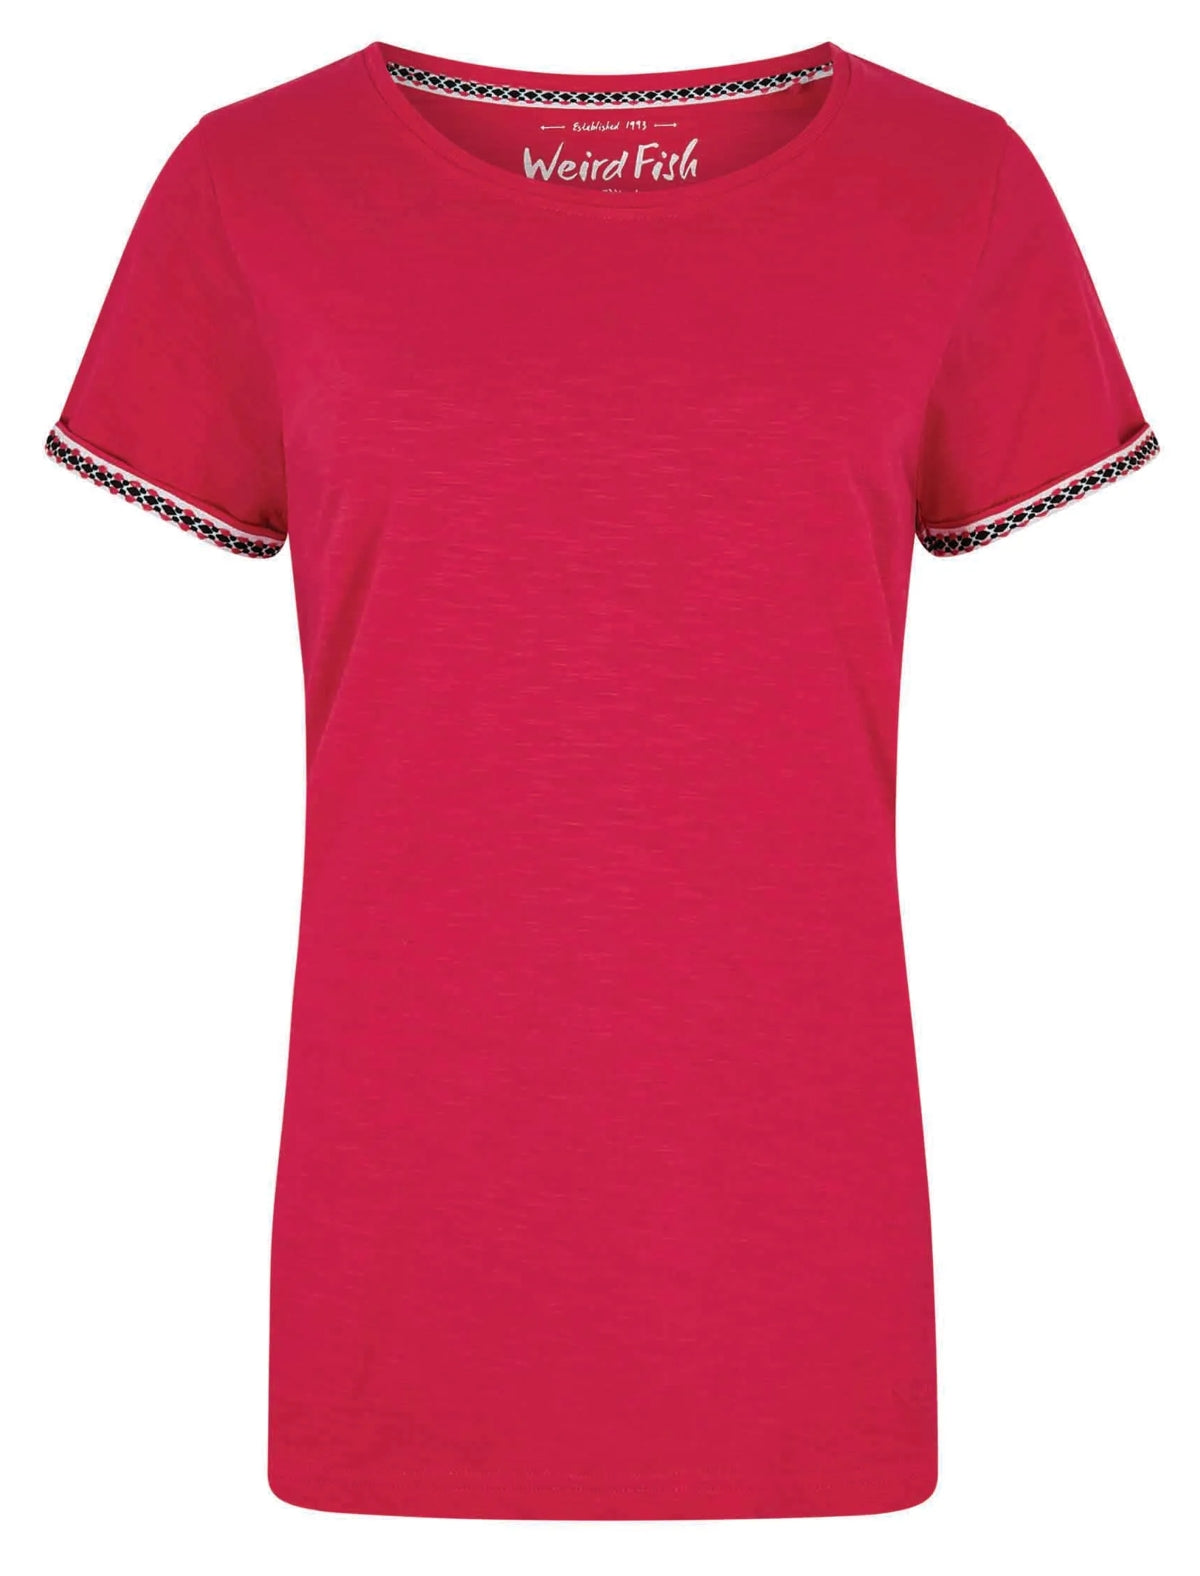 Hot Pink crew neck short sleeve women's Teya t-shirt from Weird Fish.